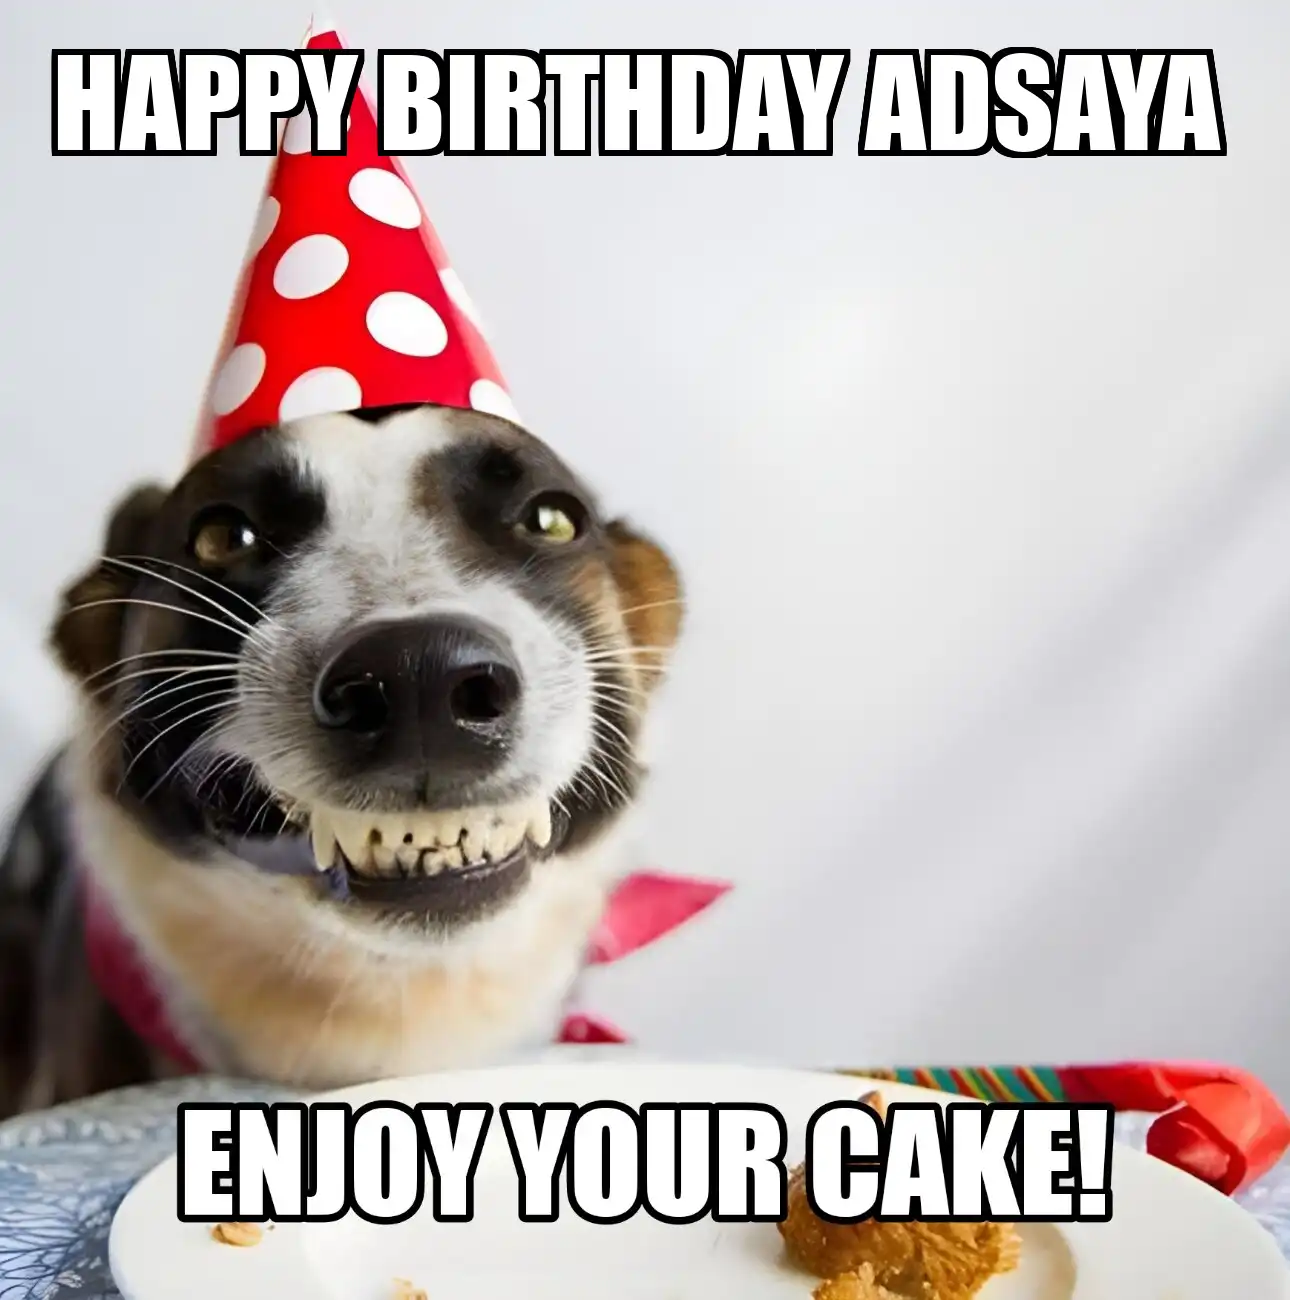 Happy Birthday Adsaya Enjoy Your Cake Dog Meme